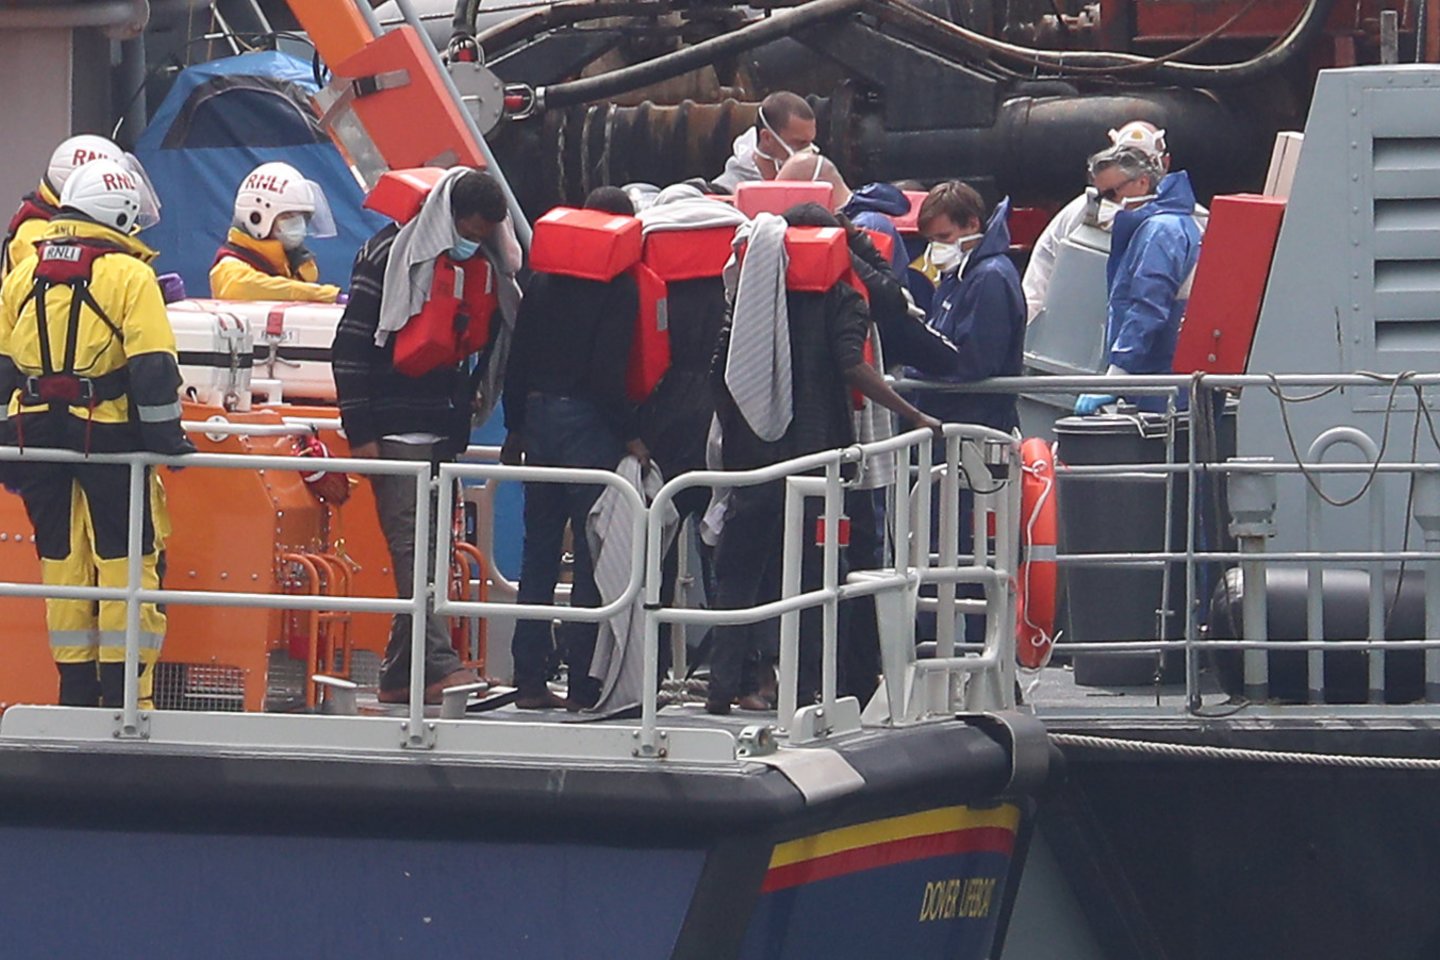  Prie Belgijos pakrantės išgelbėti 15 migrantų, kurie mėgino pasiekti Jungtinę Karalystę, tačiau jų pripučiama valtis ėmė skęsti, sekmadienį pranešė šalies prokuratūra.<br> PA/Scanpix nuotr.